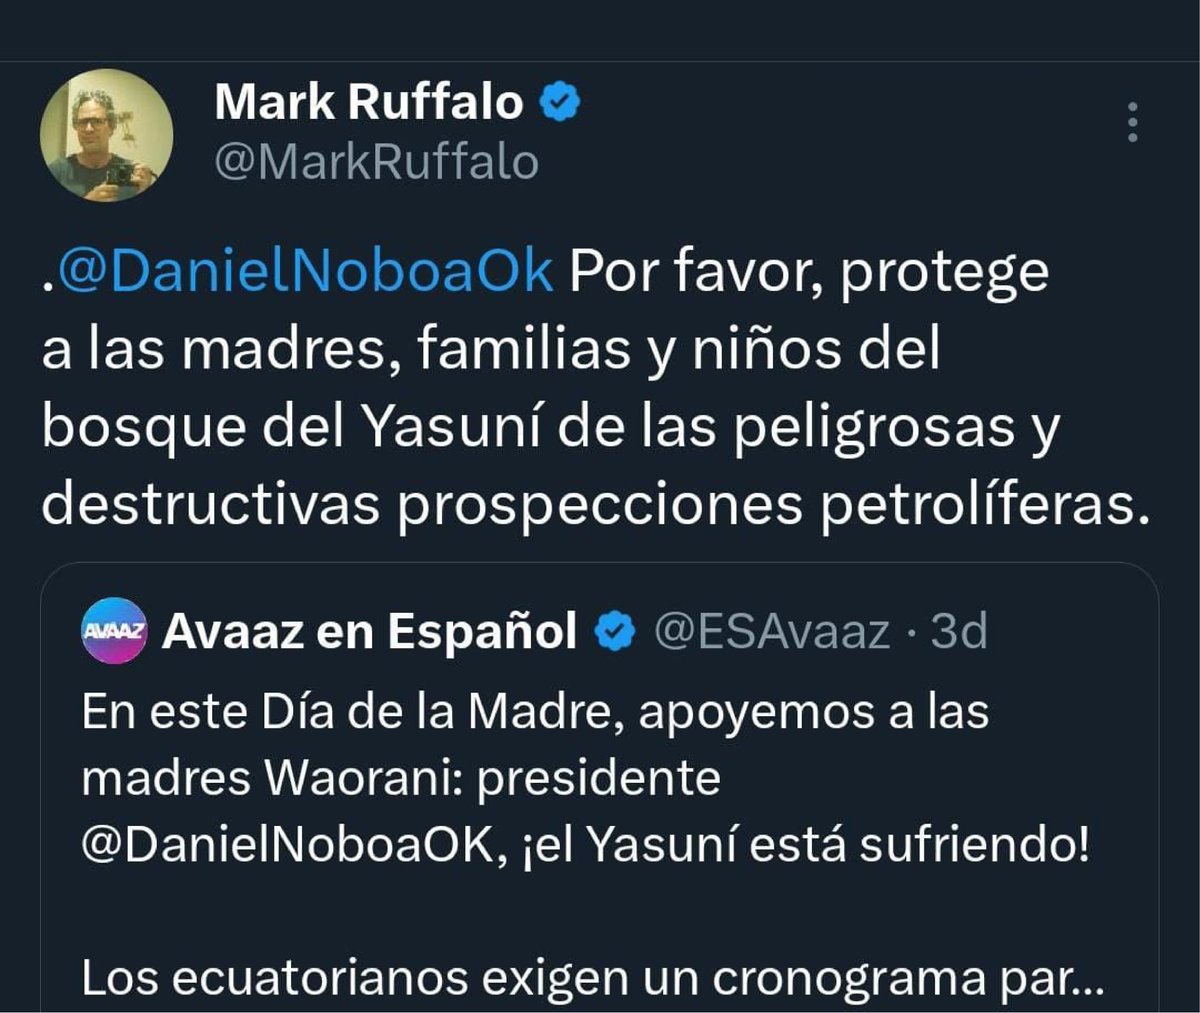 Presidente @DanielNoboaOk, el respaldo que menciona a @MarkRuffalo en temas ambientales no se nota. La comunidad internacional no come cuento, ni los ecuatorianos tampoco. Cerca de 40 organizaciones de la sociedad civil hemos pedido la renuncia de la Ministra de Ambiente